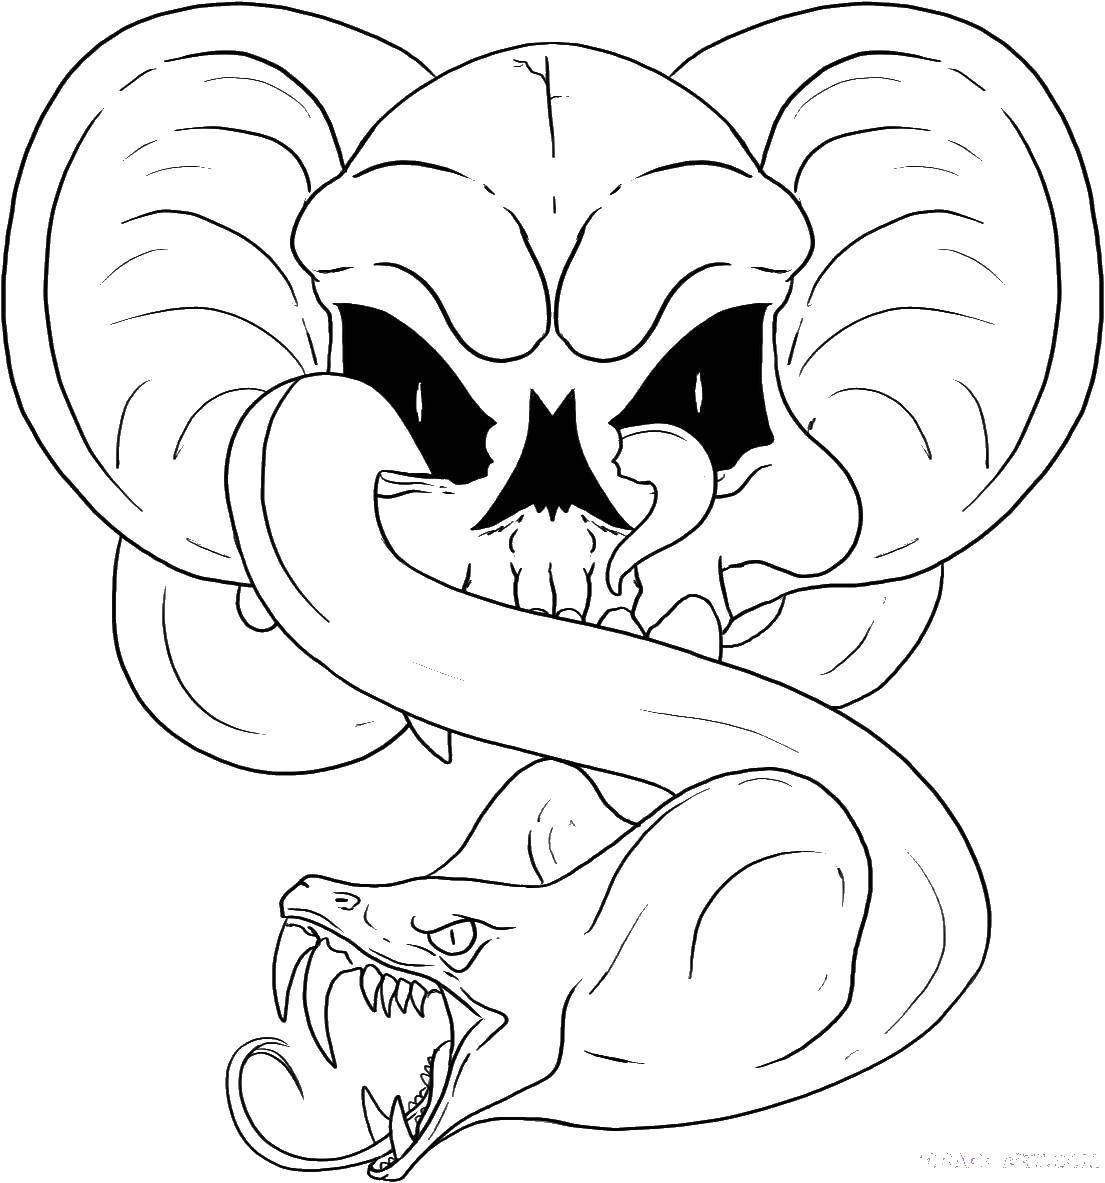 Coloring Skull snake. Category Skull. Tags:  skull, snake.